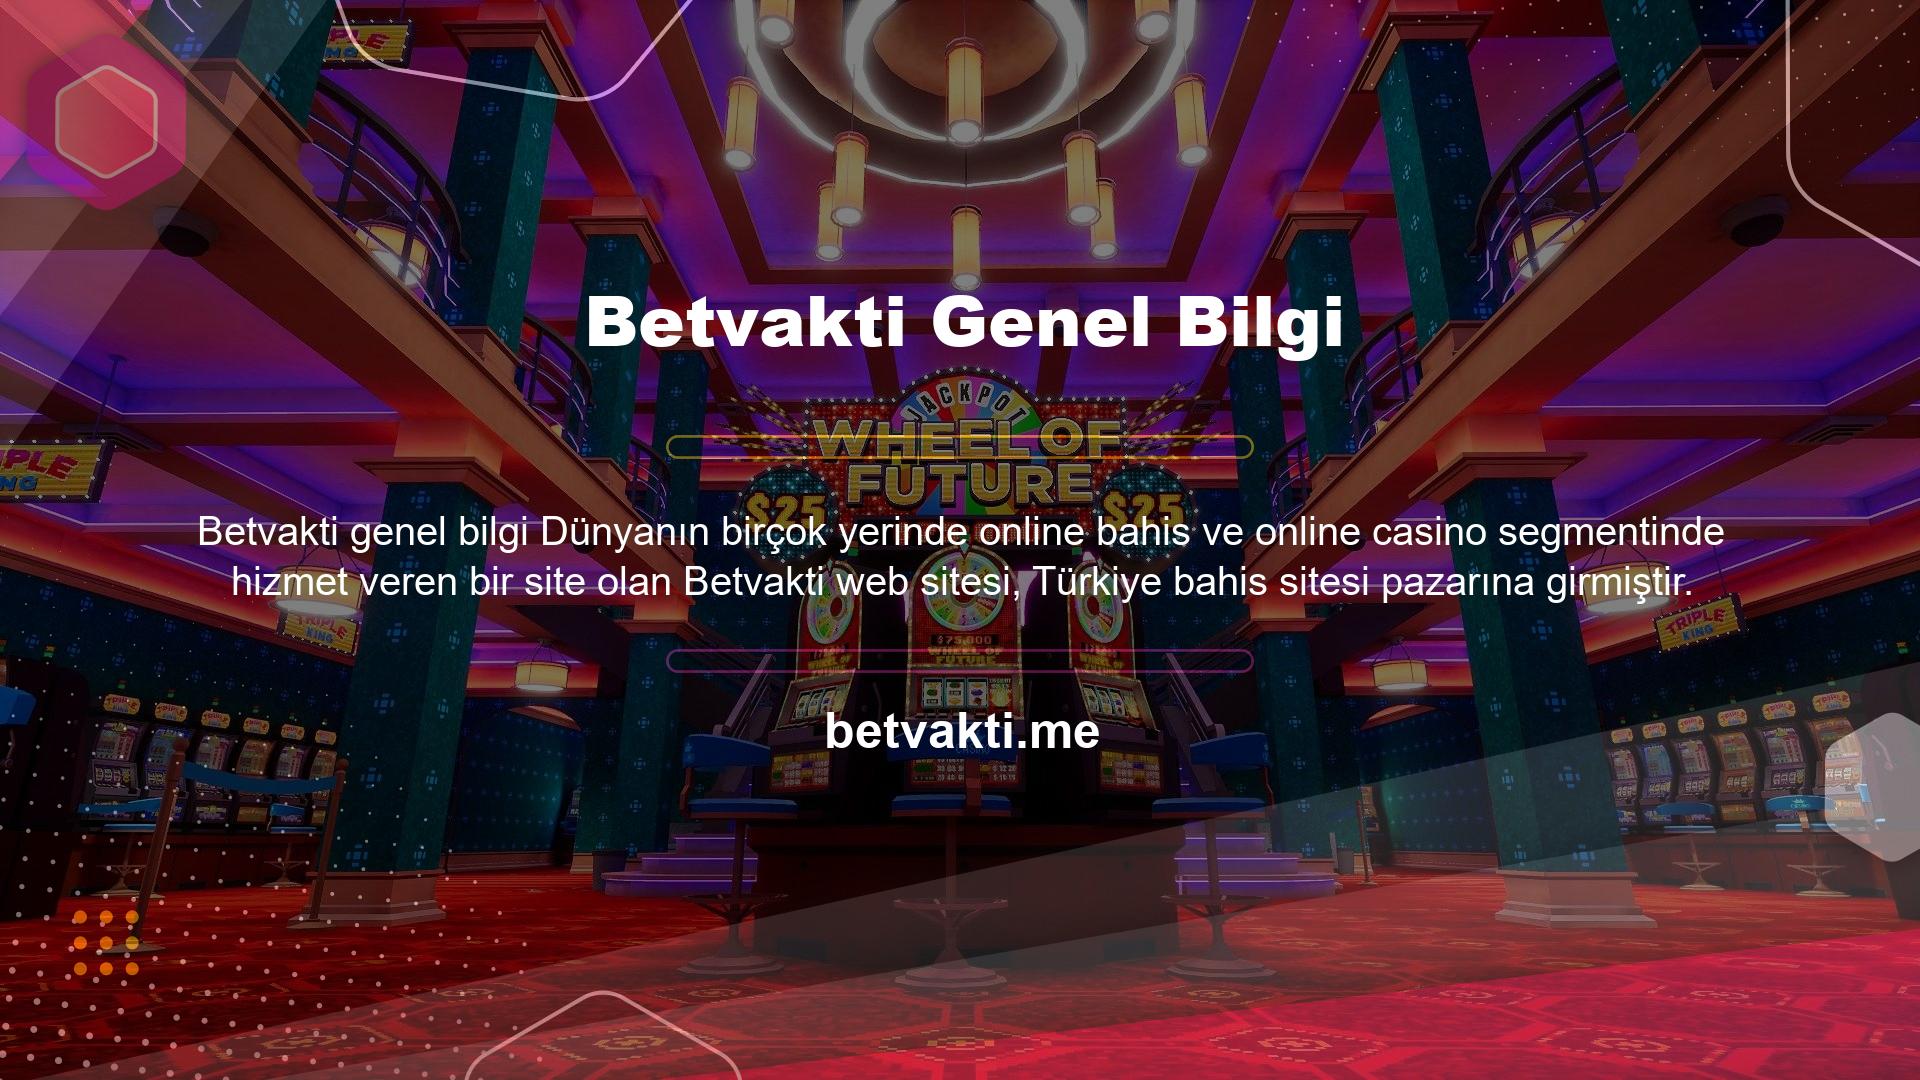 Aslında Betvakti Türkiye'de kurulan bahis siteleri arasında yepyeni bir sitedir ve favori site haline gelmiştir